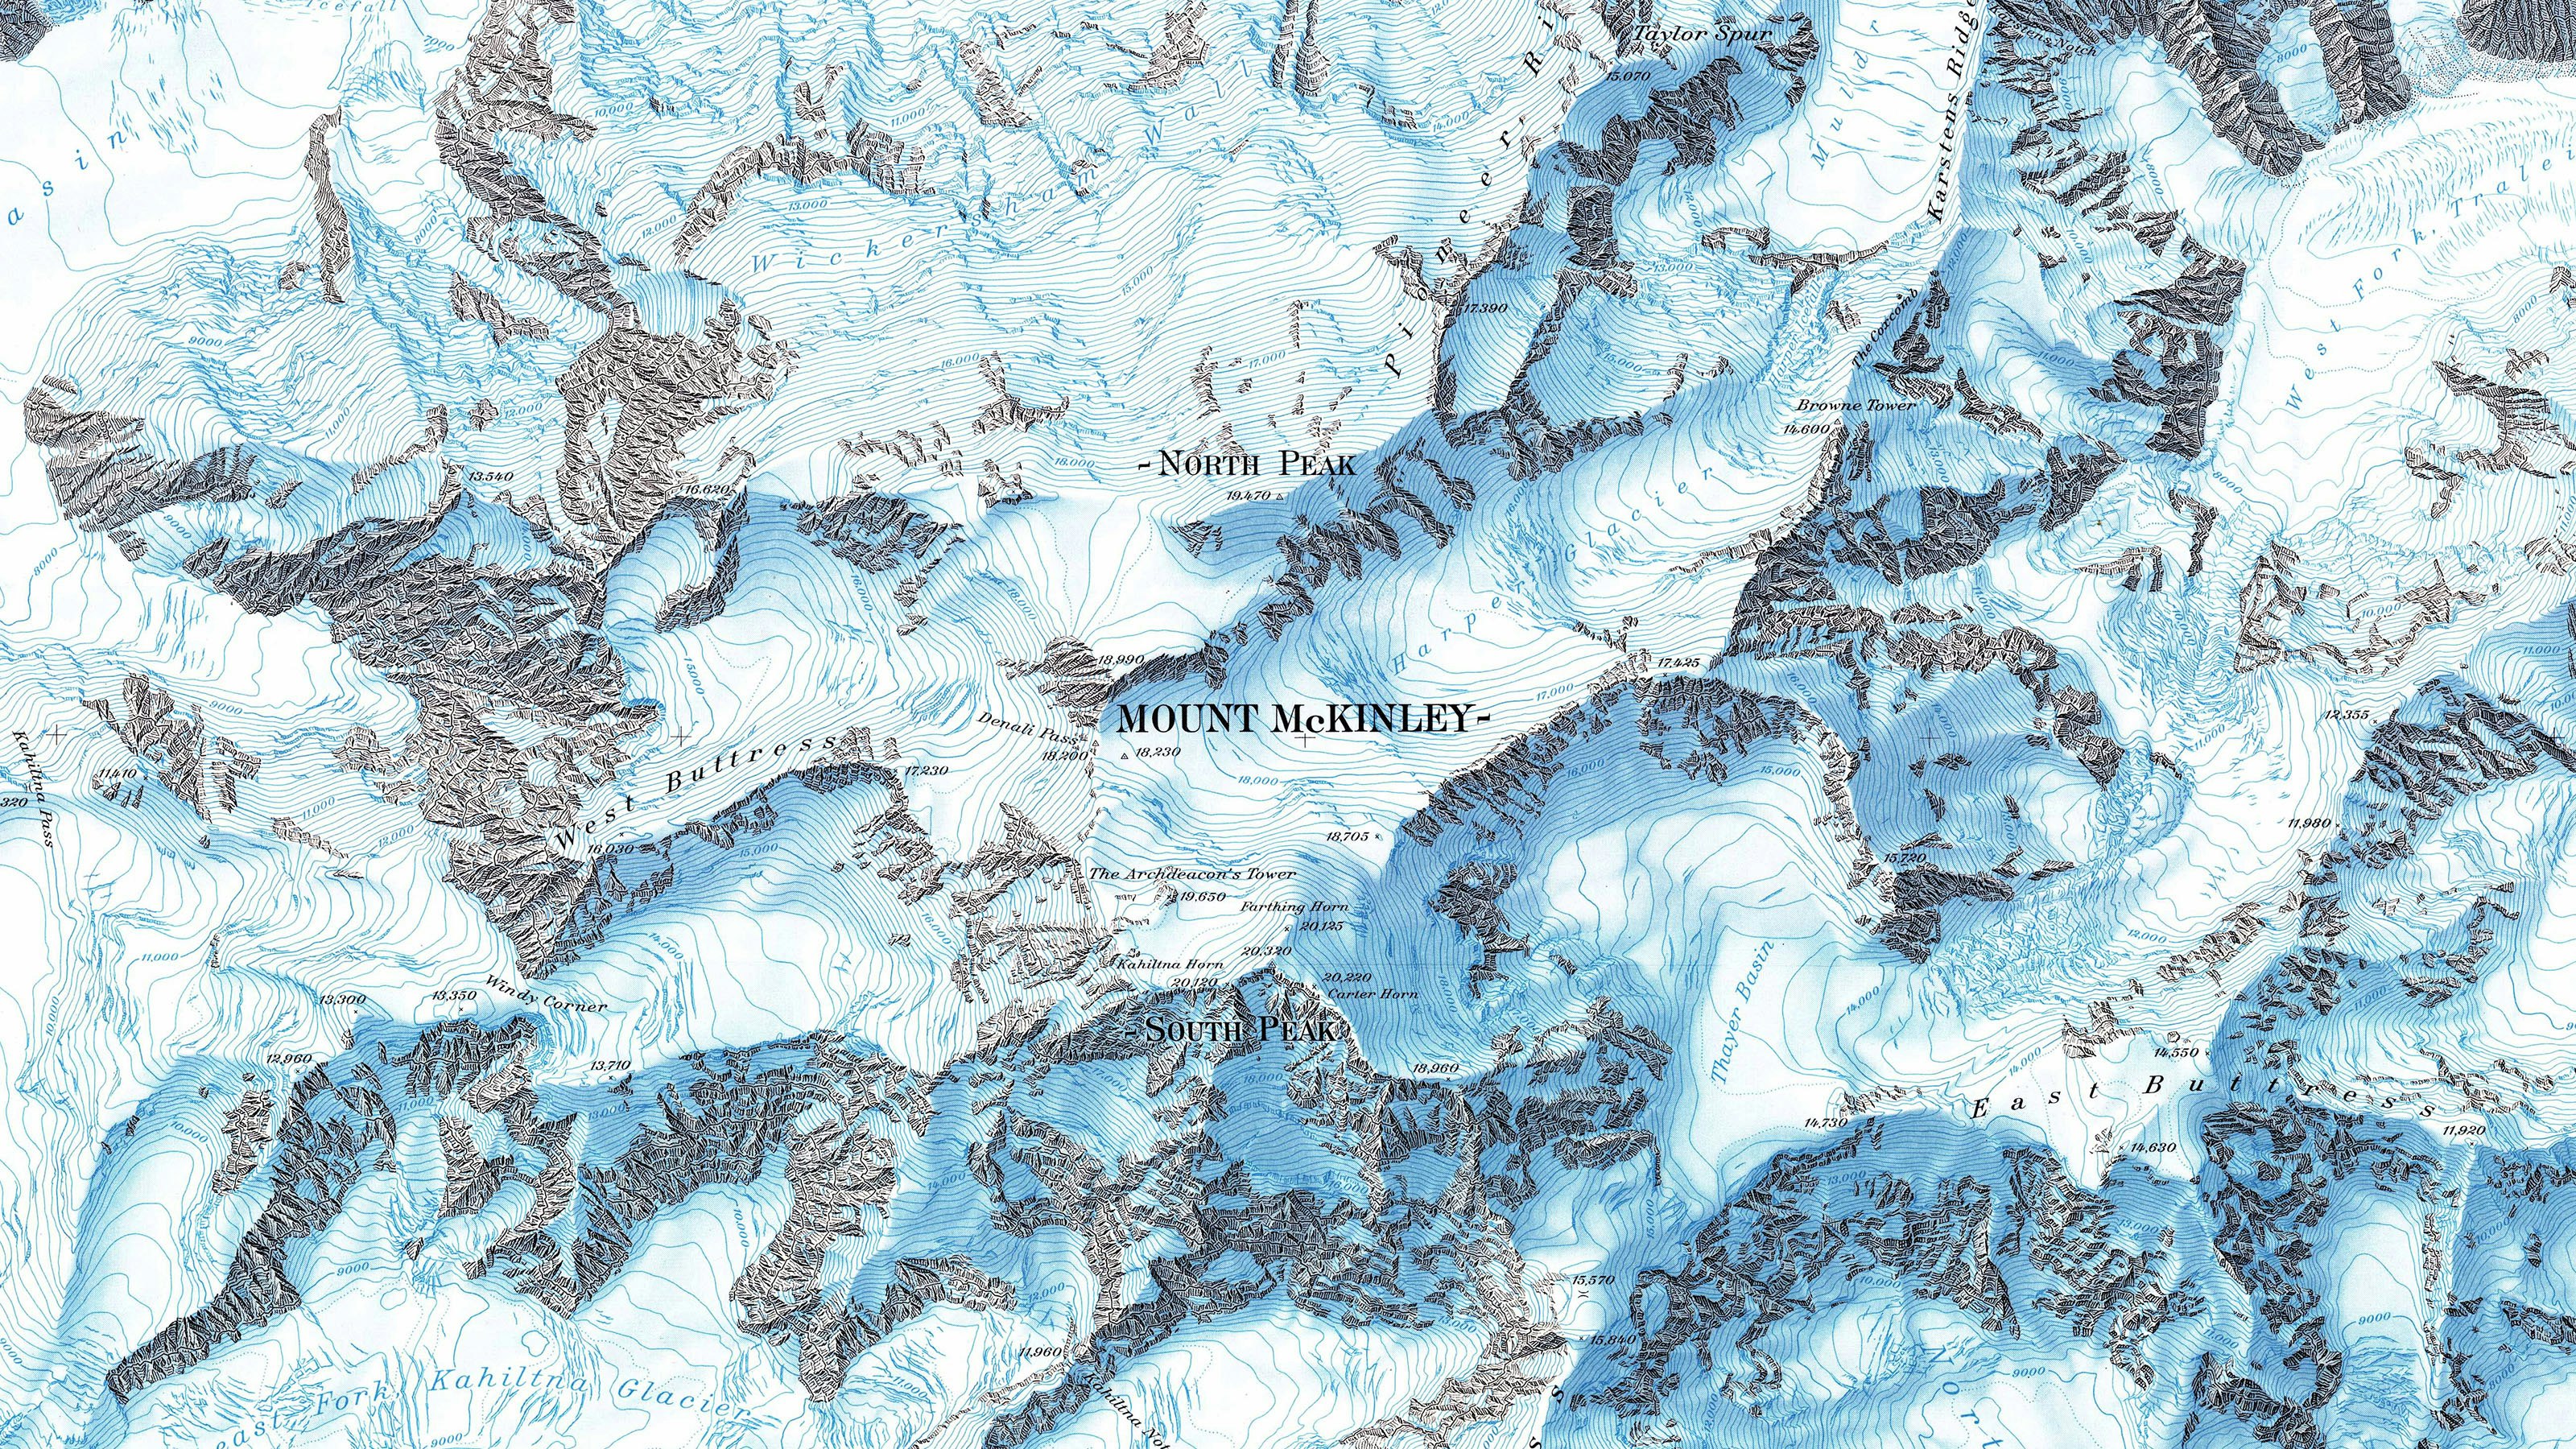 Karte des Mount McKinley, Ausschnitt. Die Karte zeigt ein US-amerikanisches Gebiet, ist aber in der Schweizer Manier gehalten.